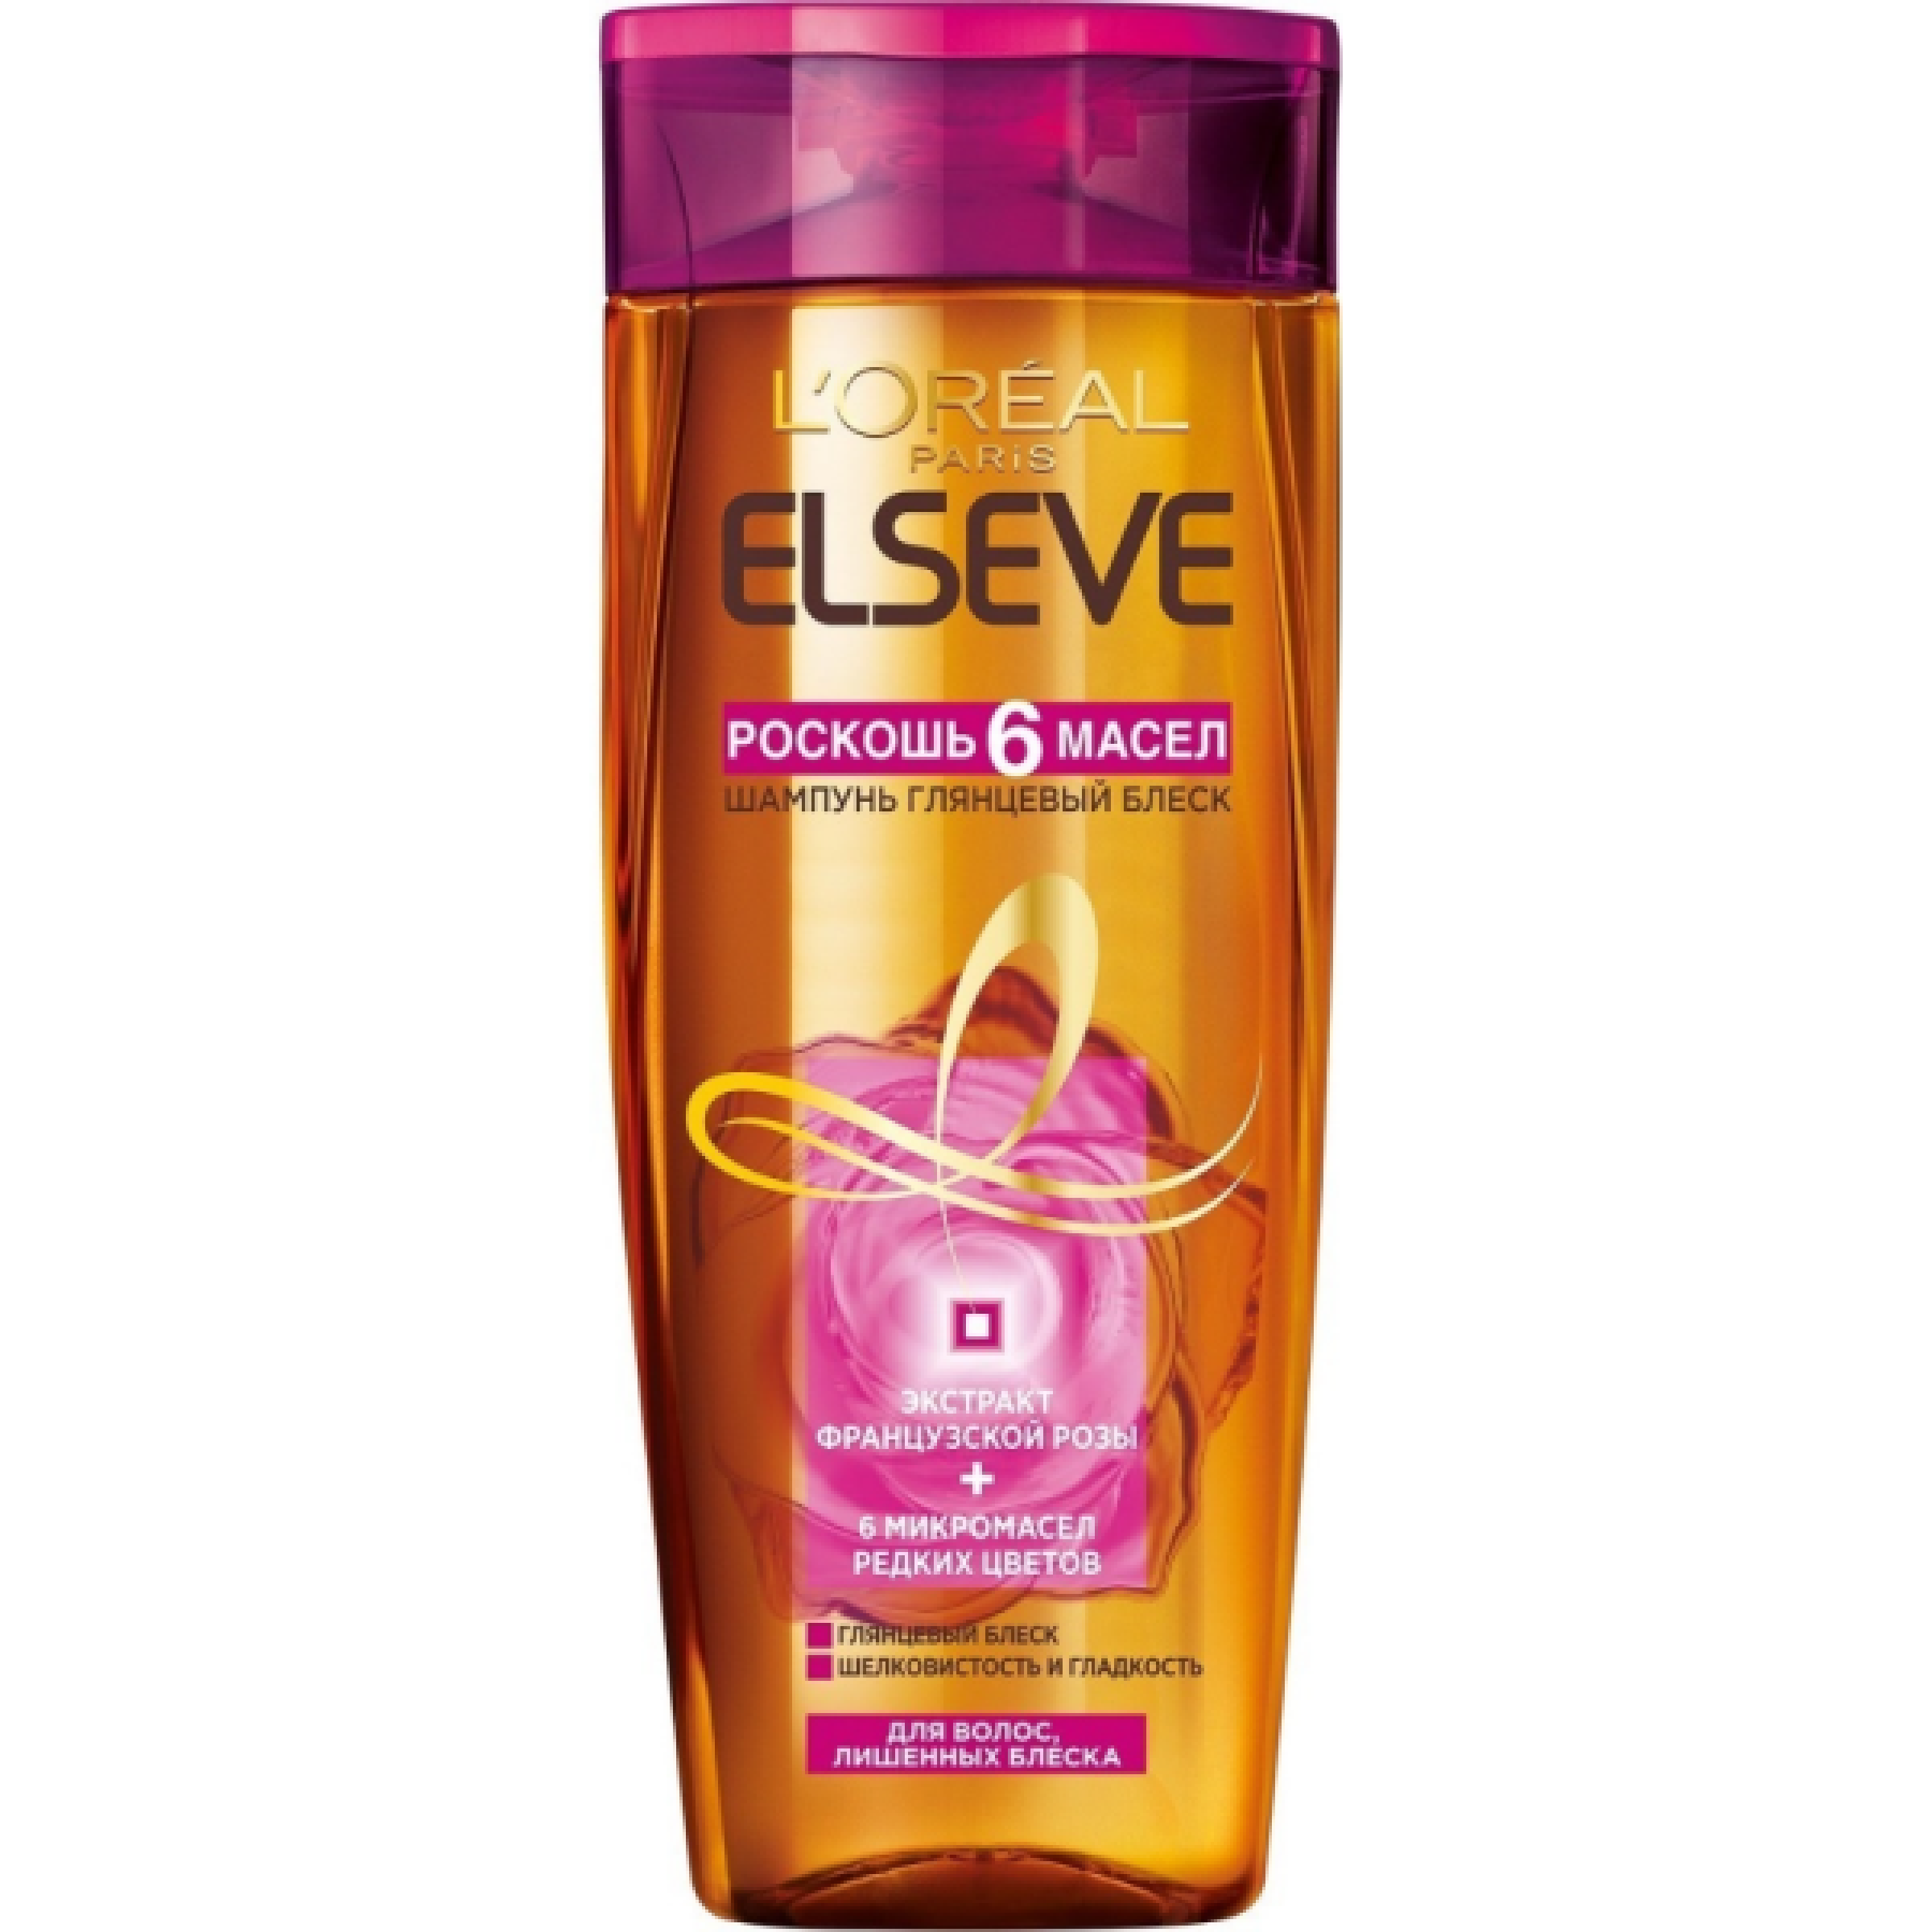 Шампунь для волос LOreal Paris Elseve 6 Масел Розовое масло, 400 мл